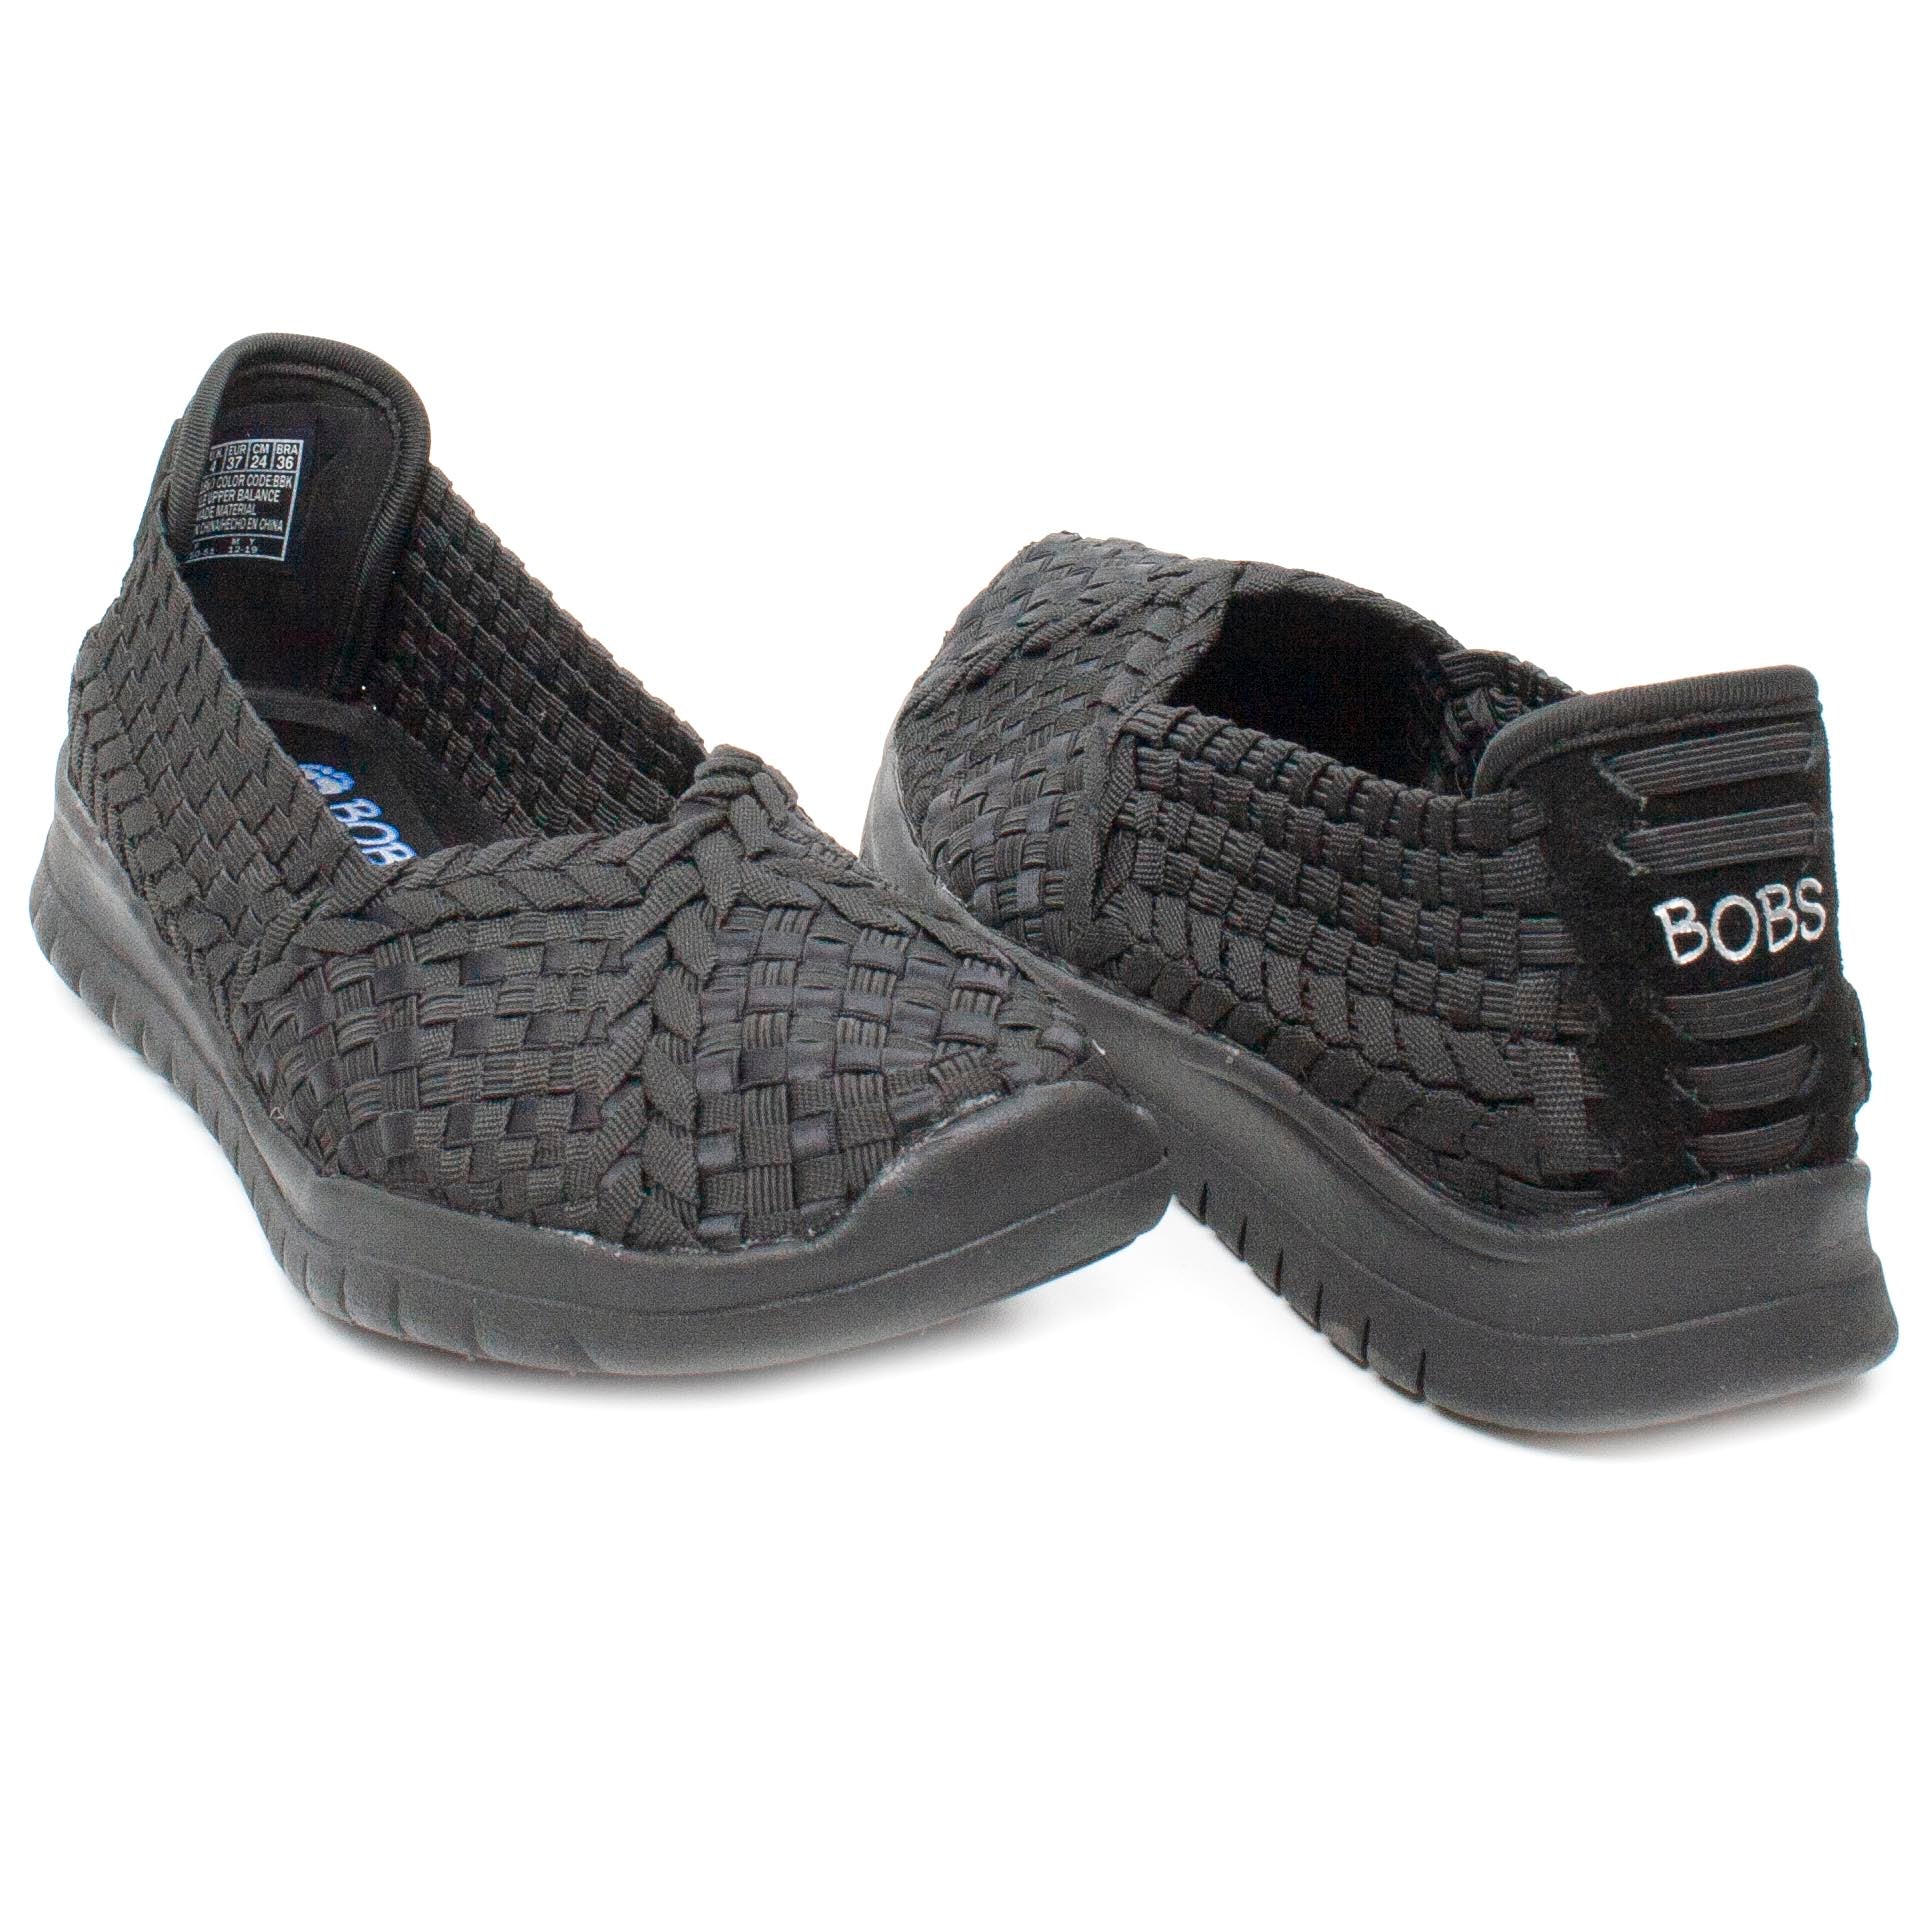 Skechers Pantofi dama 31860 negru ID1422-NG